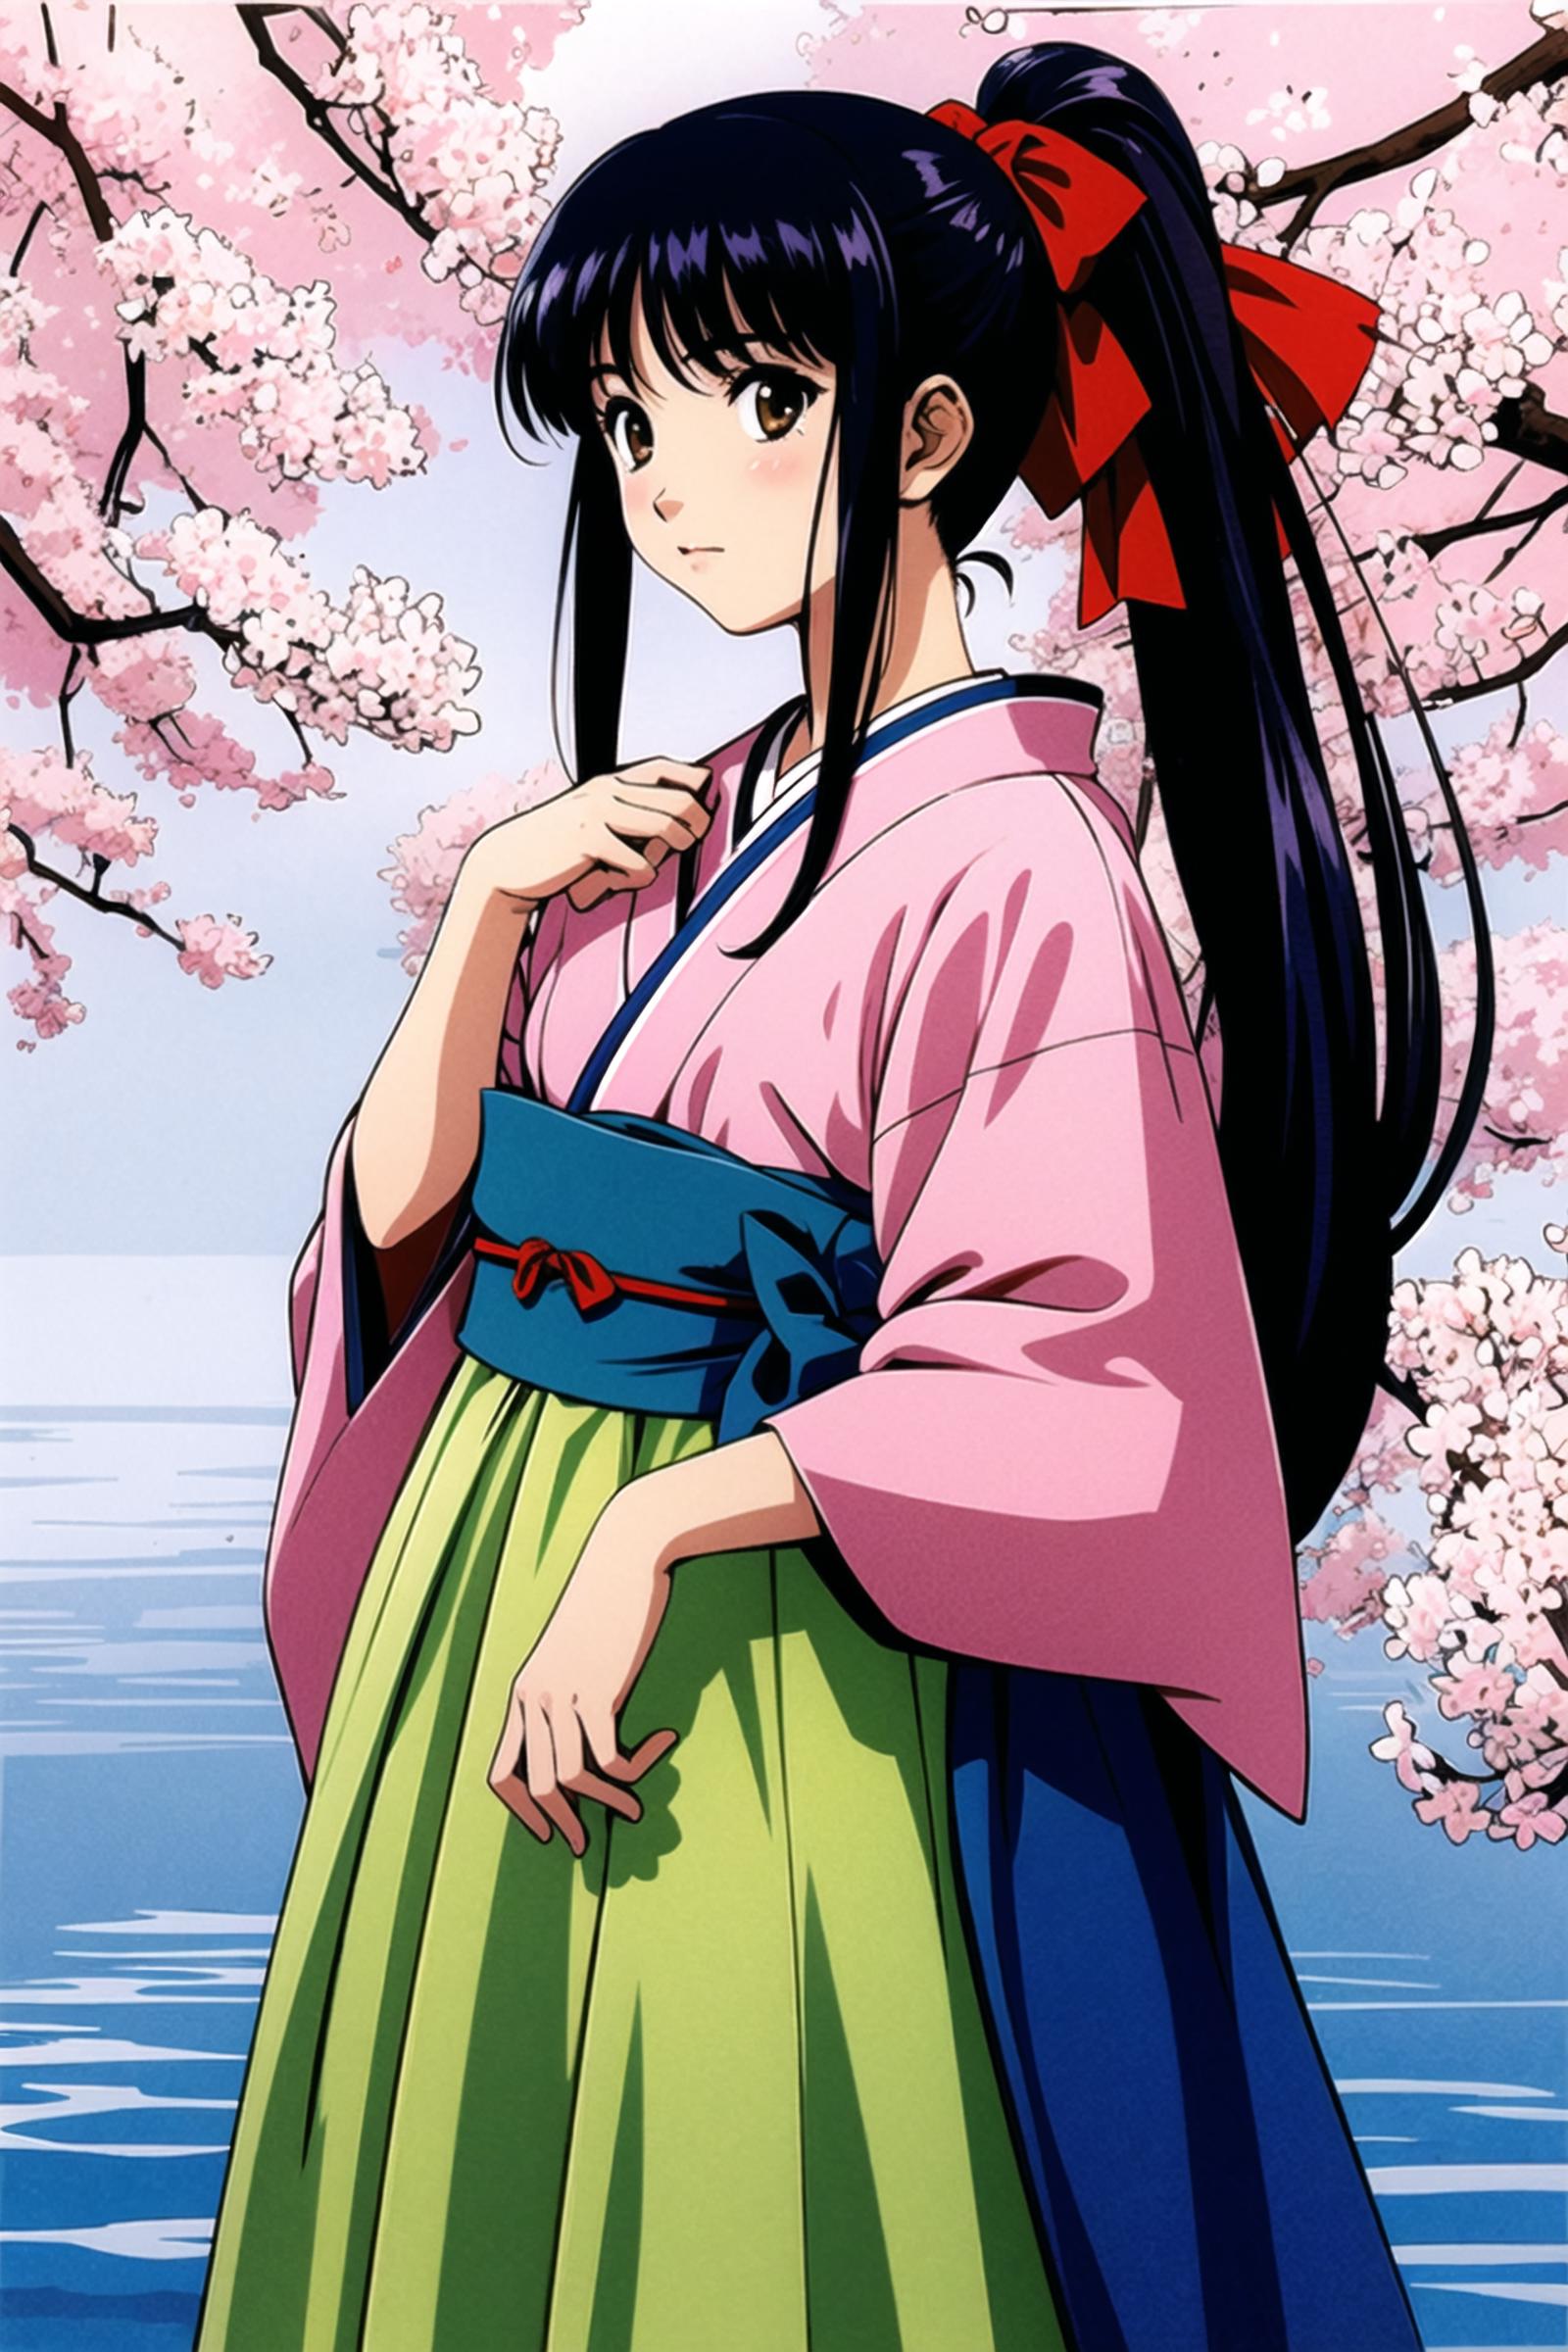 Sakura Wars/Sakura Taisen (樱花大战) (Matsubara Hidenori/松原秀典)(Kousuke Fujishima/藤岛康介) - Artist Style image by flyx3